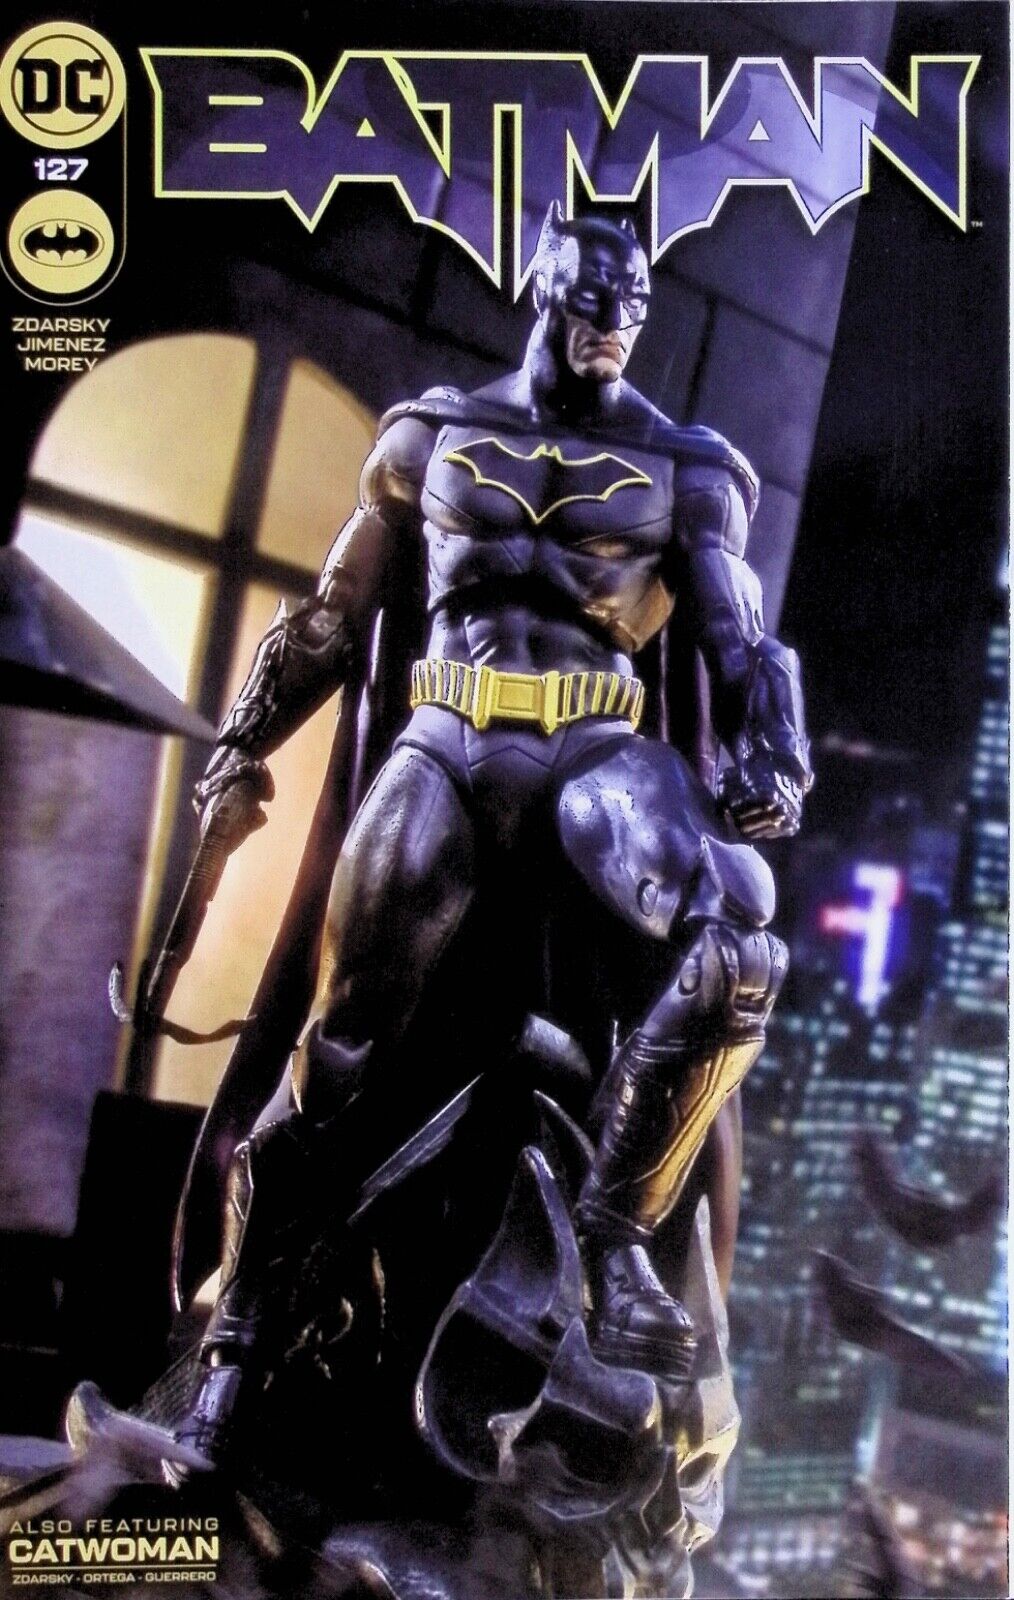 BATMAN Comic Issue 127 — McFarlane Exclusive Action Figure Variant Cover DC Univ